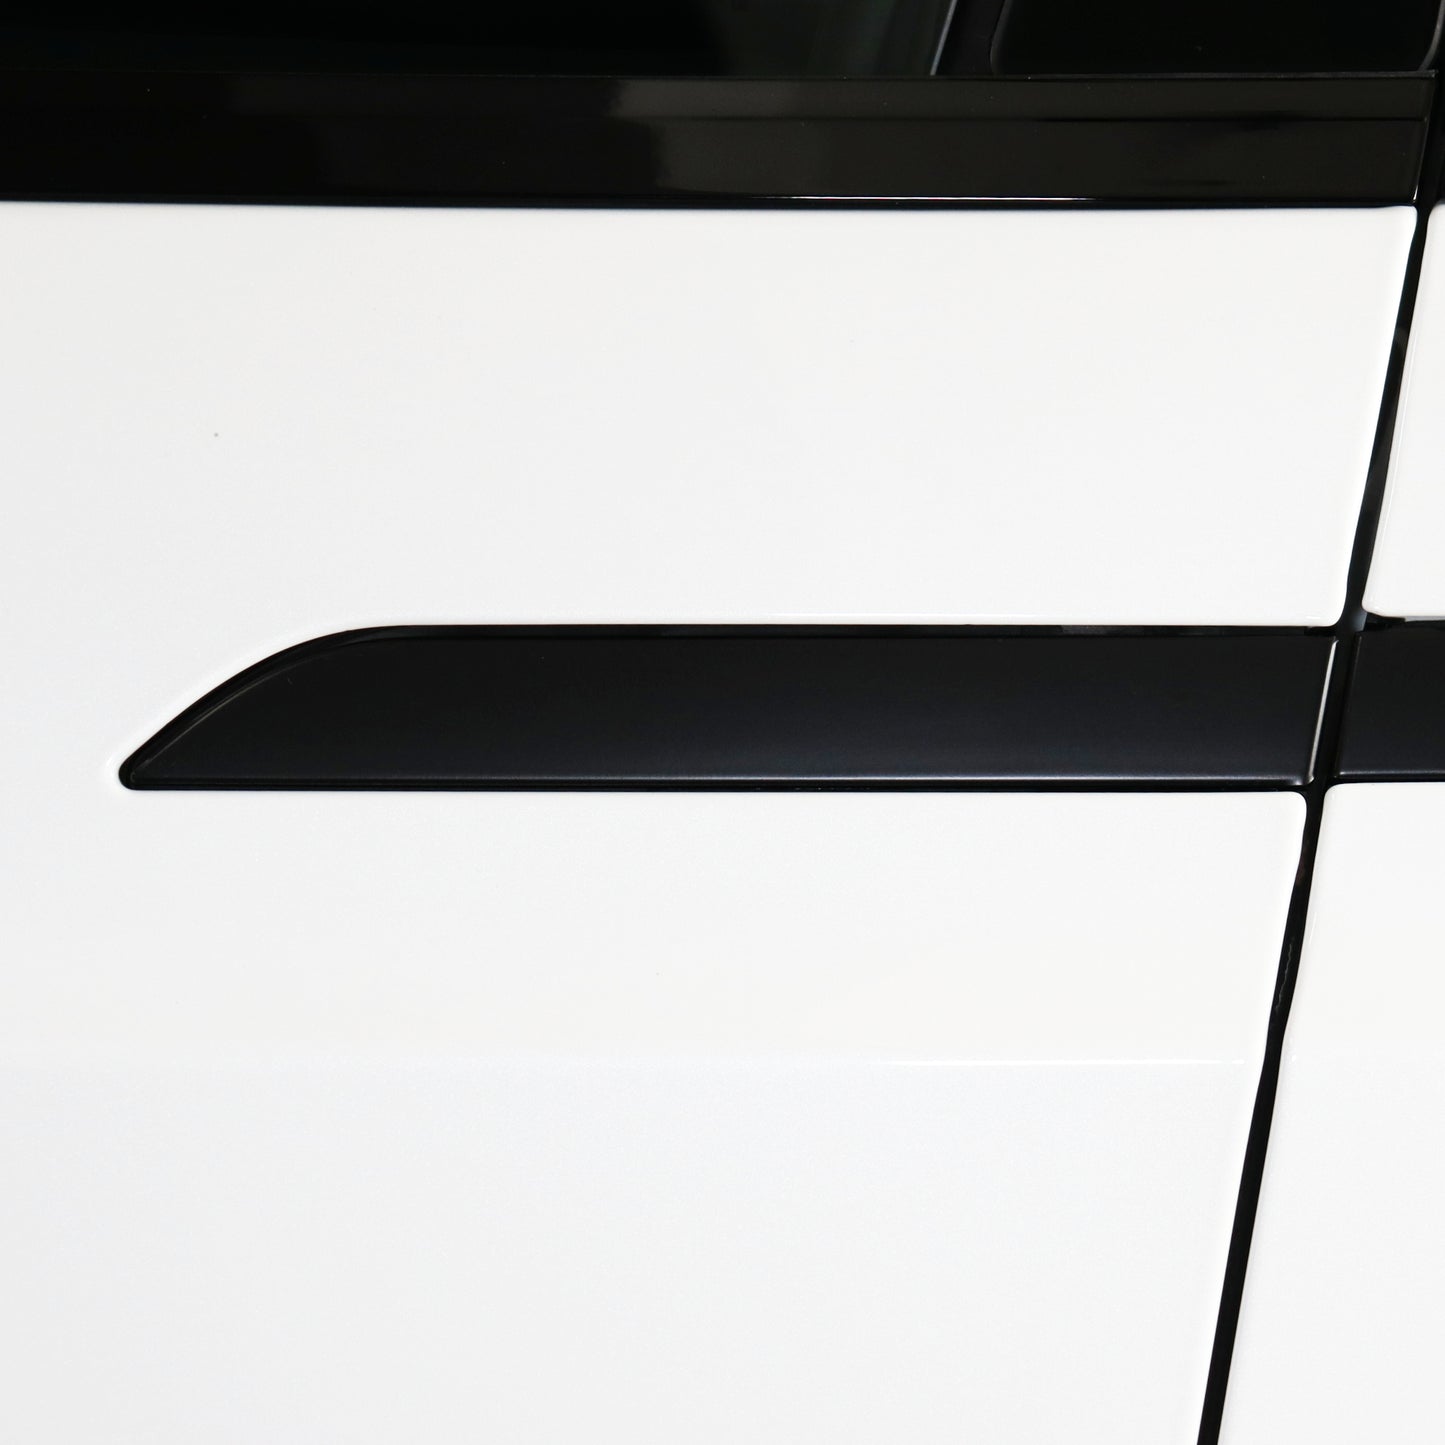 Door Handles Vinyl Covers for Tesla Model X (2016+ including Plaid)